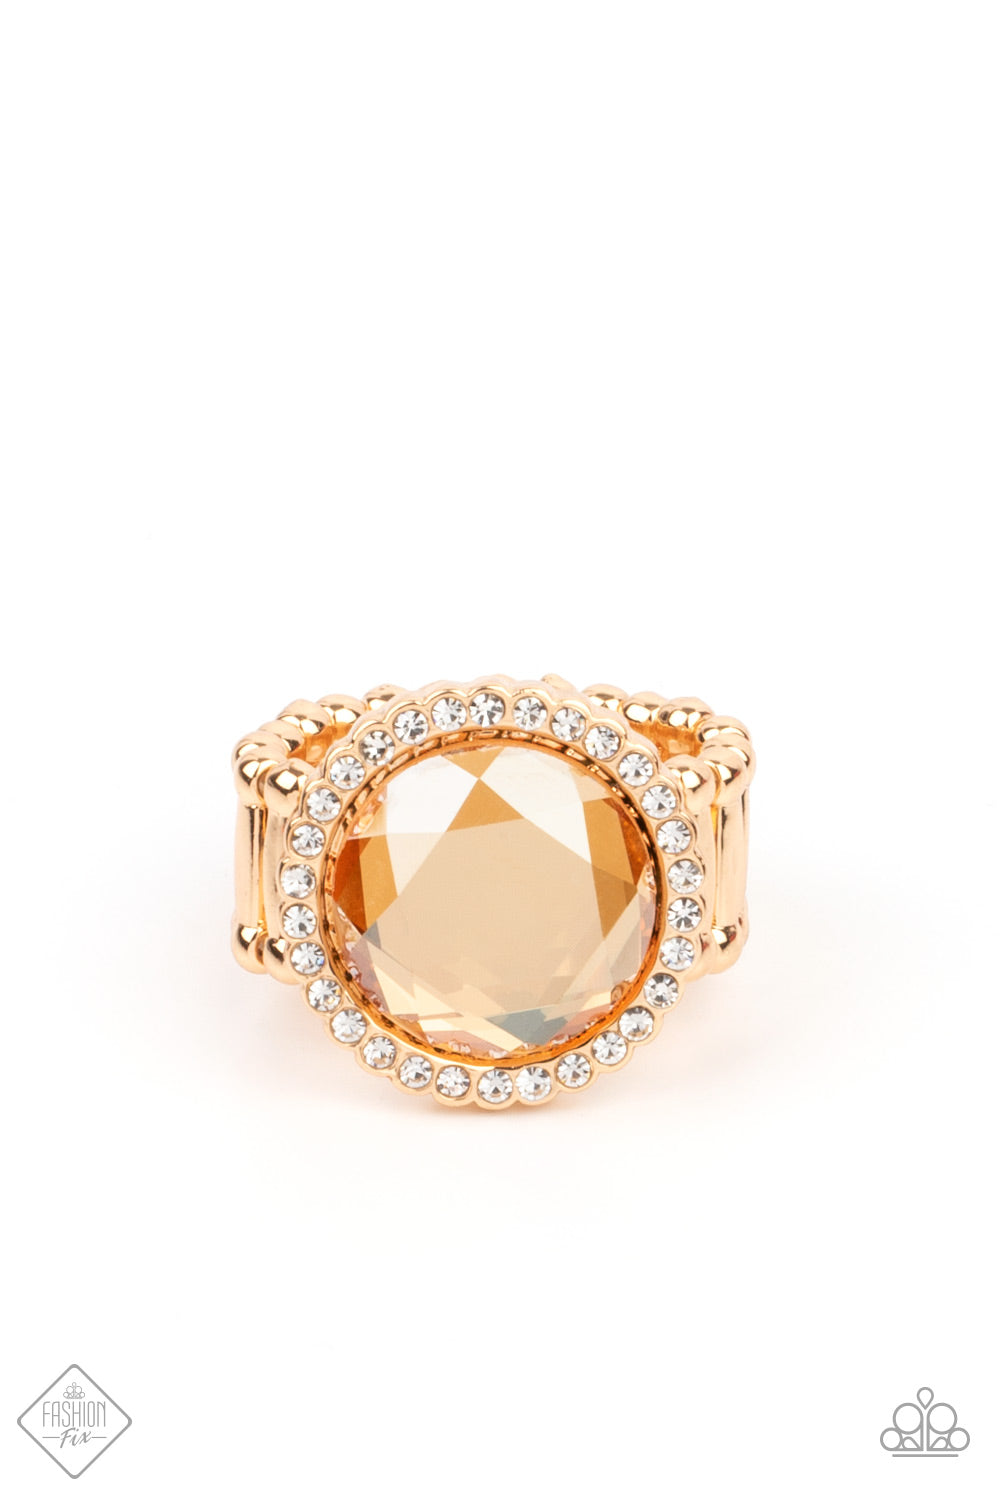 Crown Culture Gold
Ring - Daria's Blings N Things